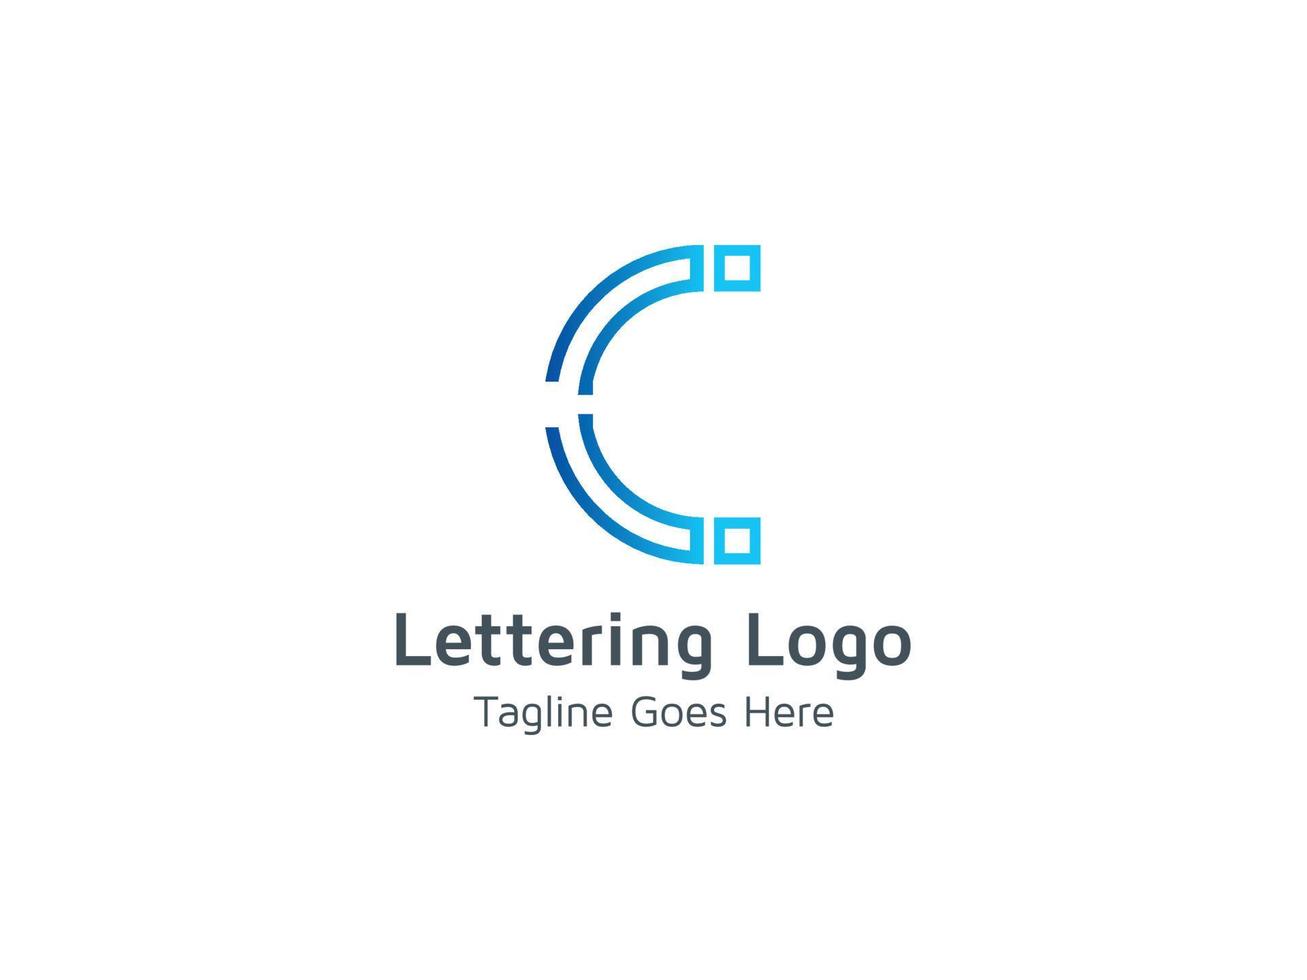 Buchstabe c Logo-Design-Vorlagenbilder pro kostenloser Vektor